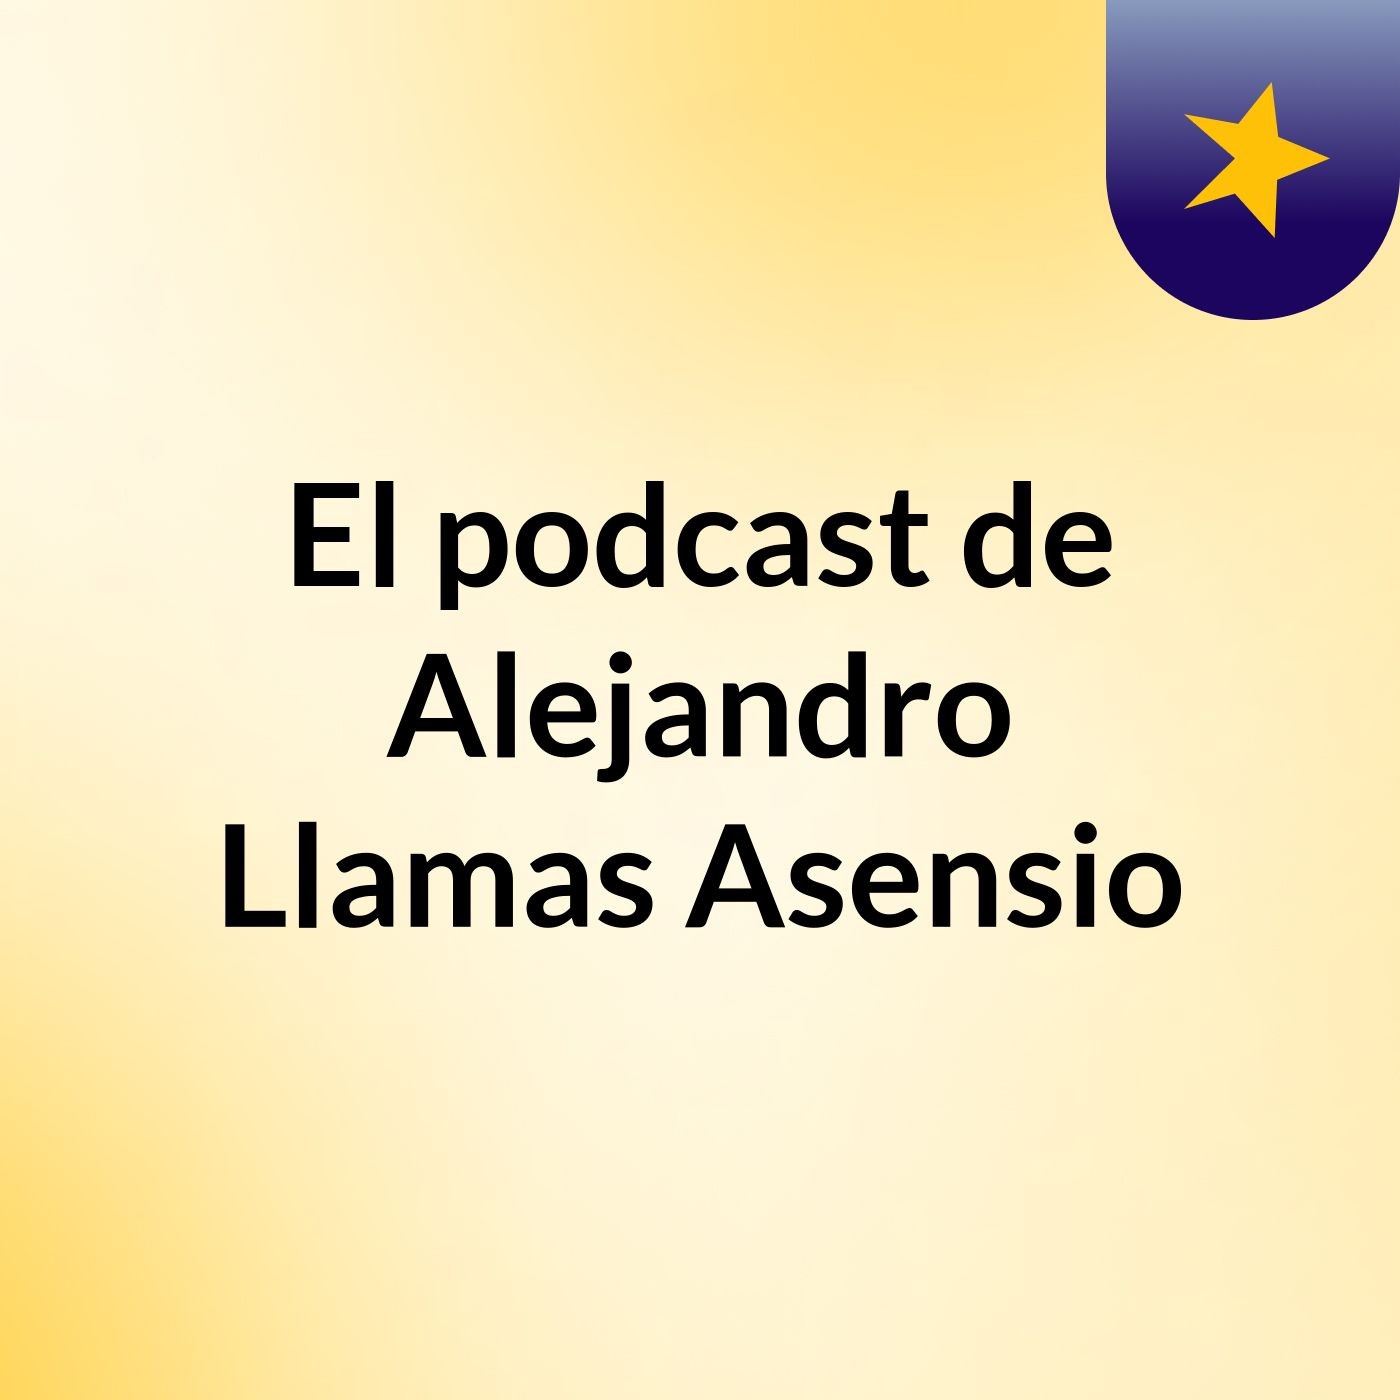 El podcast de Alejandro Llamas Asensio